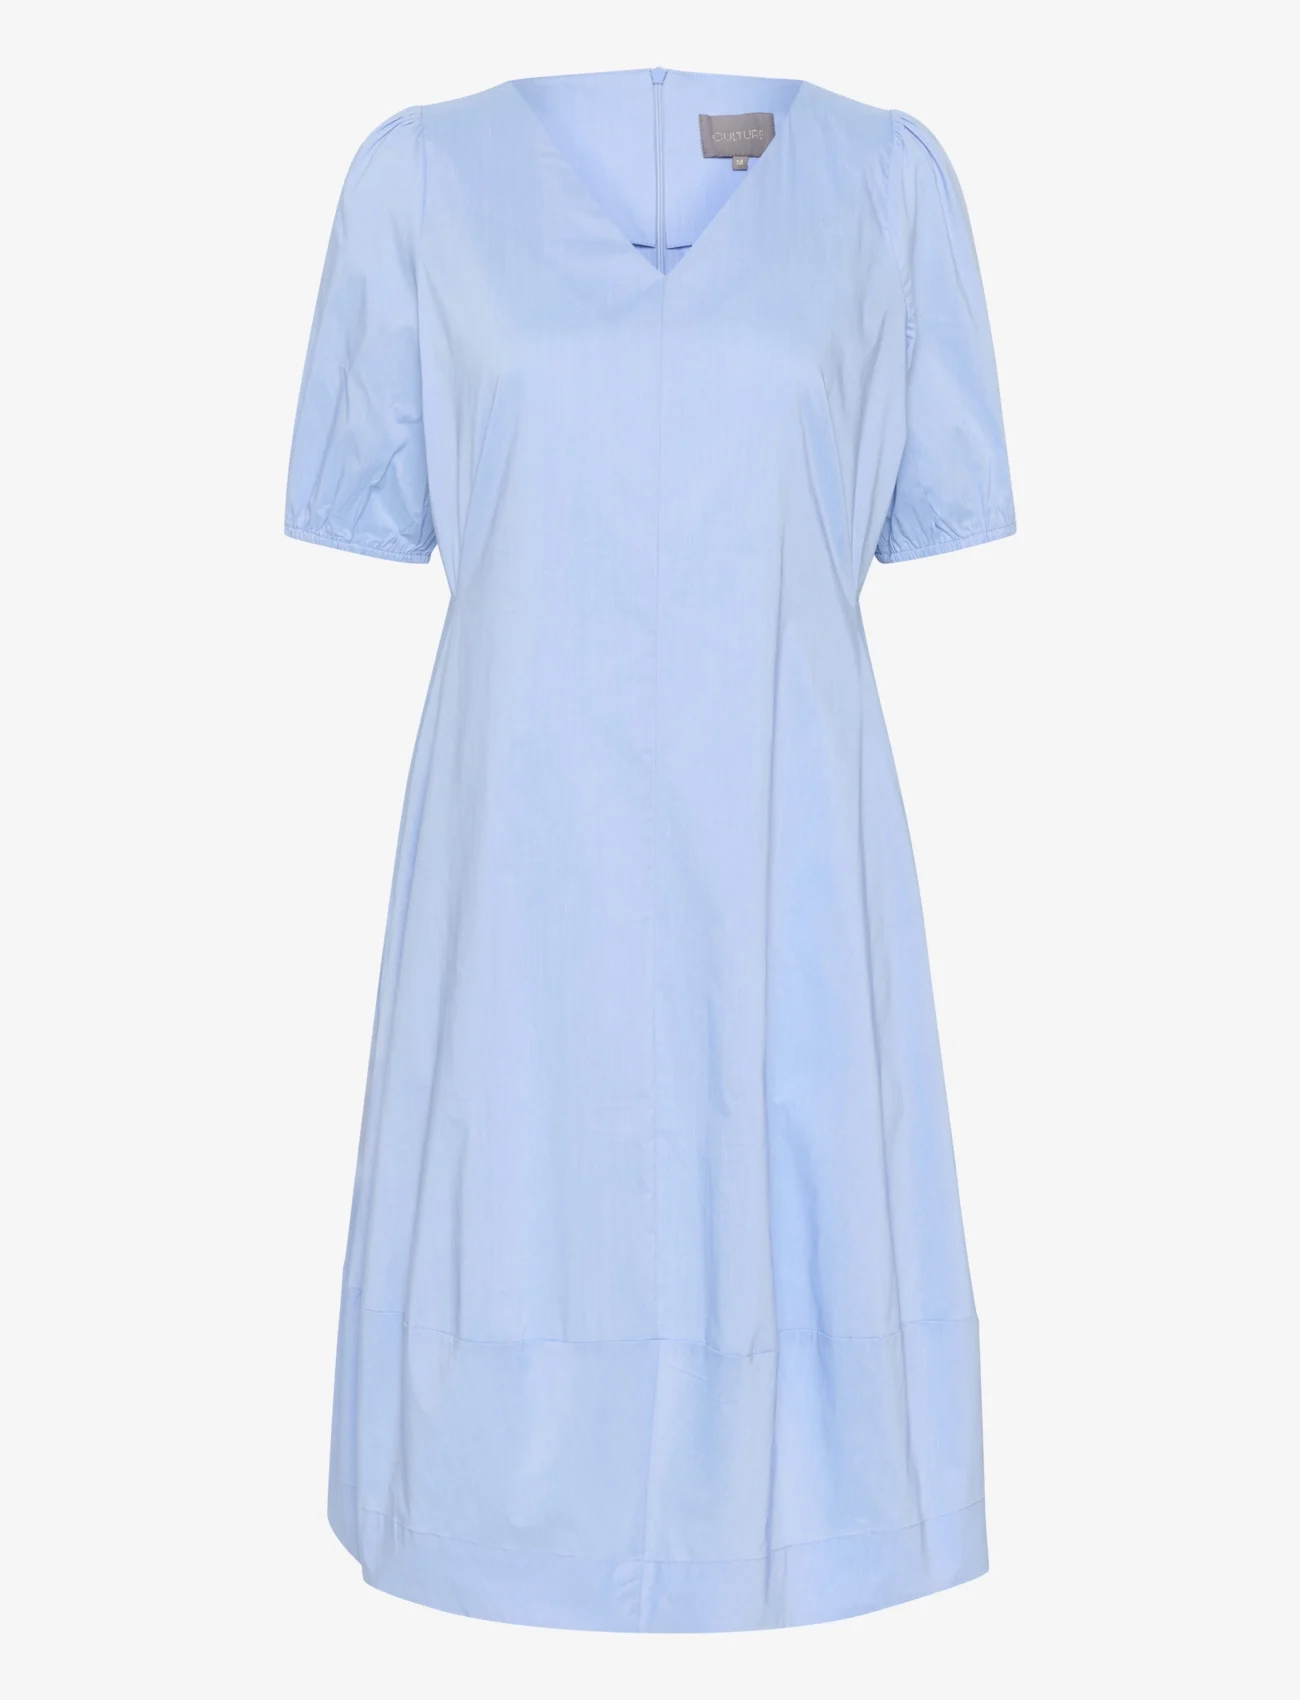 Culture - CUantoinett SS Dress - midikjoler - forever blue - 0